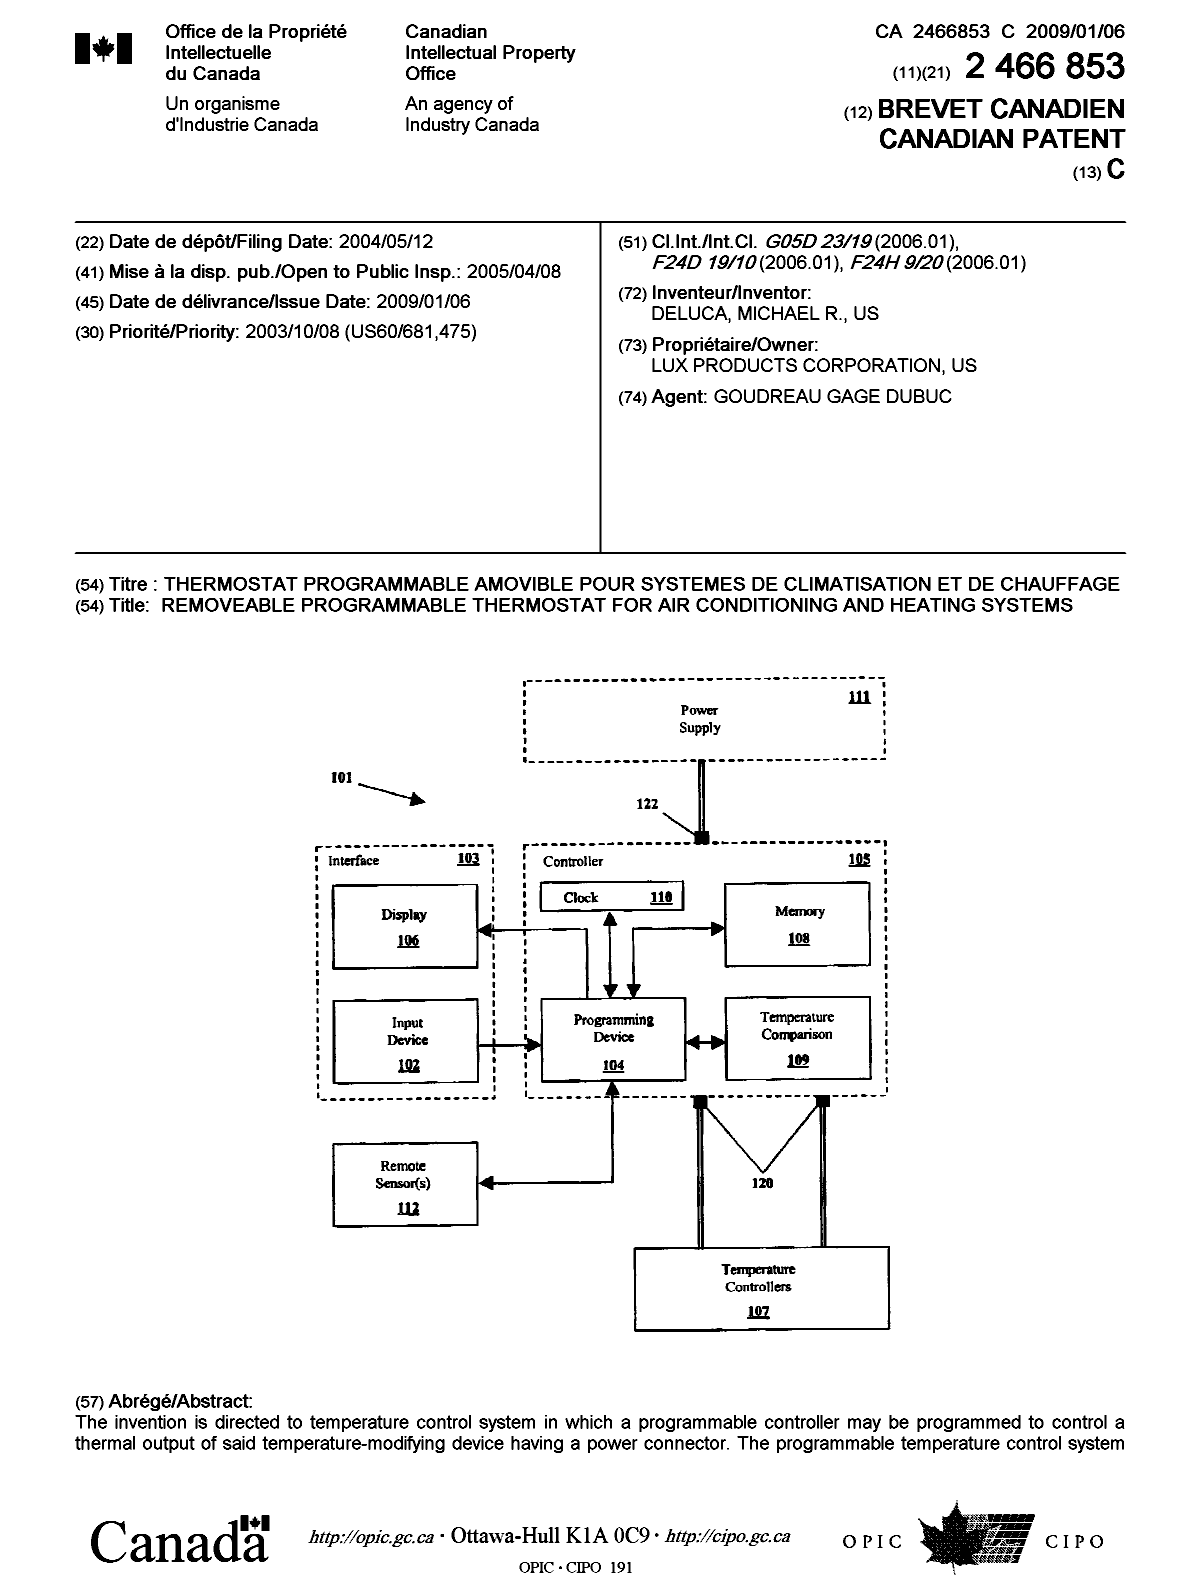 Document de brevet canadien 2466853. Page couverture 20081217. Image 1 de 2